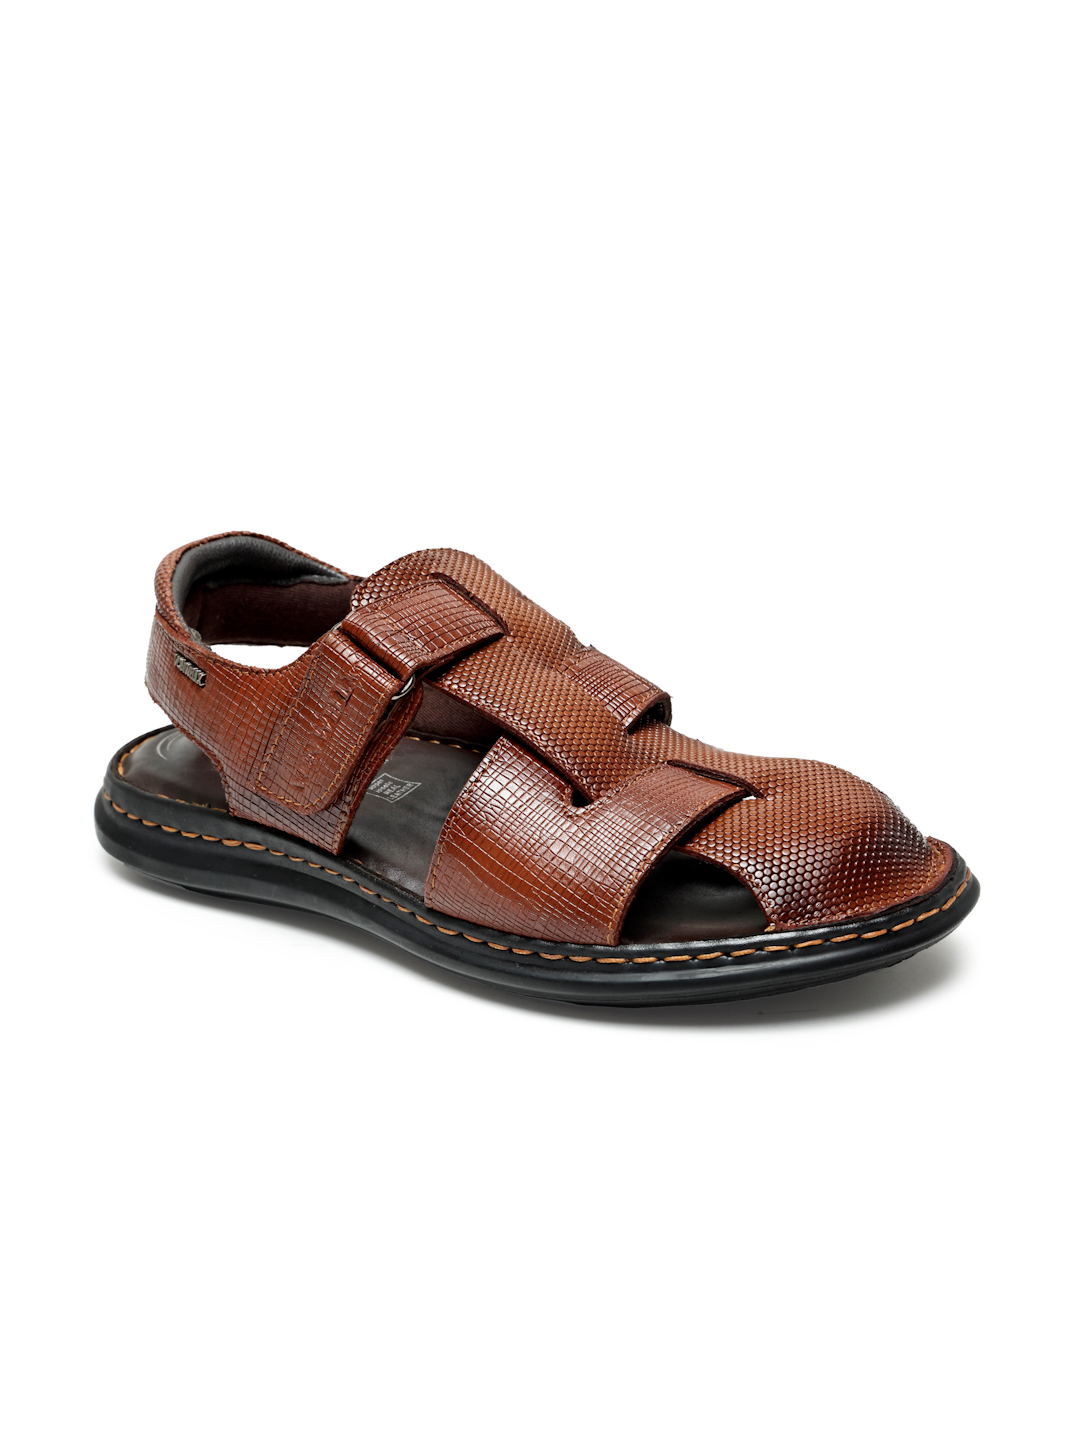 Buy Von Wellx Germany Comfort Men's Tan Sandals Morgen Online in Ludhiana